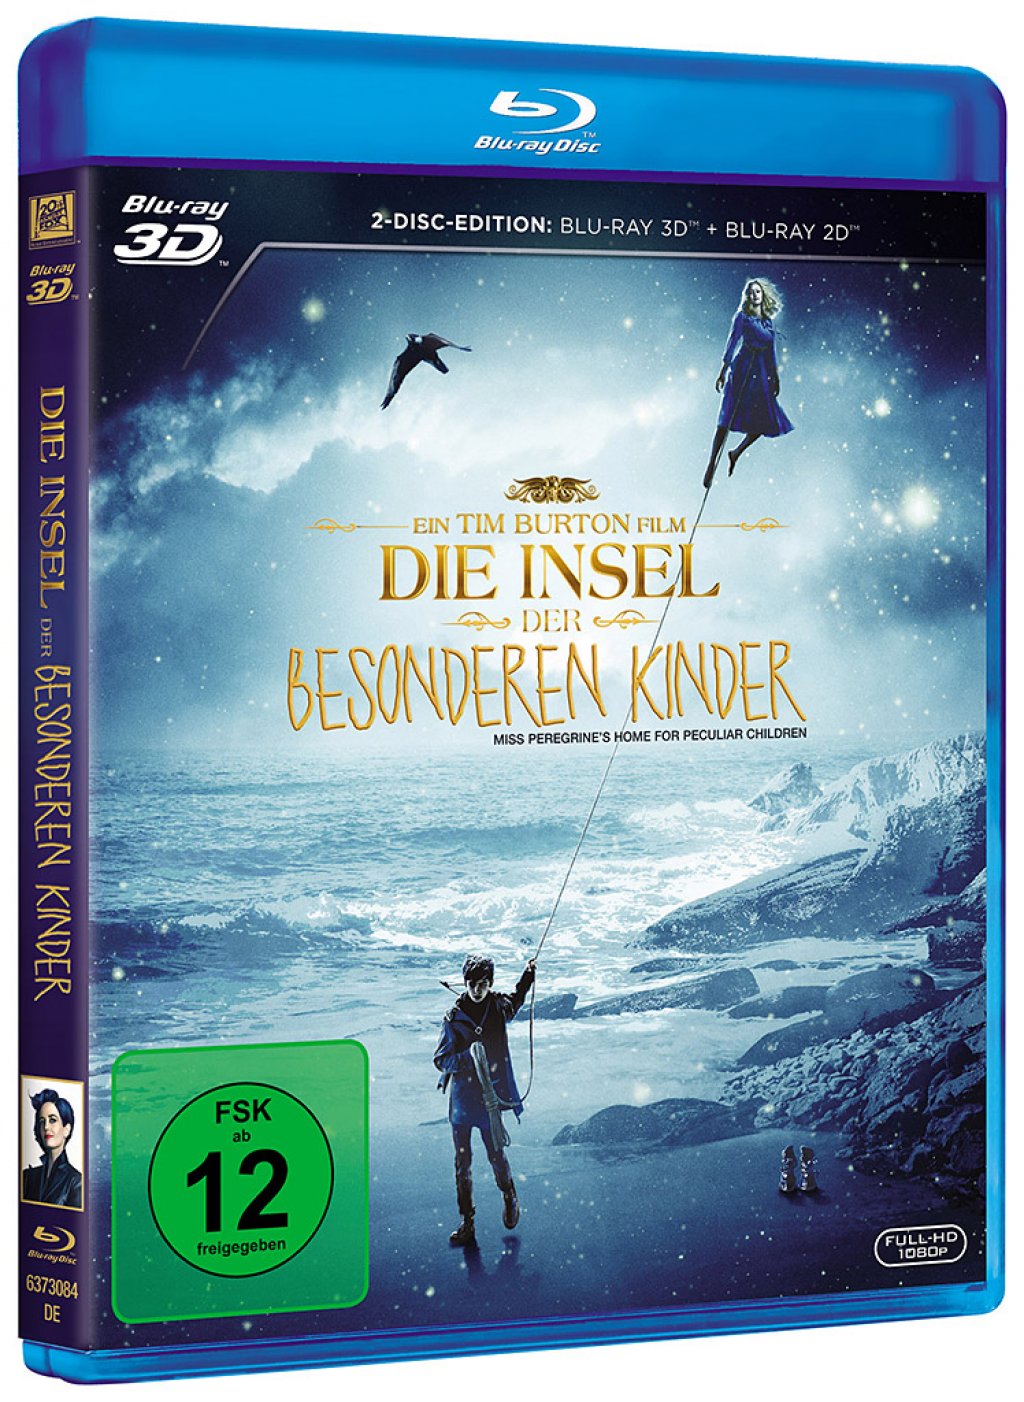 Die Insel der besonderen Kinder - Blu-ray 3D + 2D (Blu-ray)